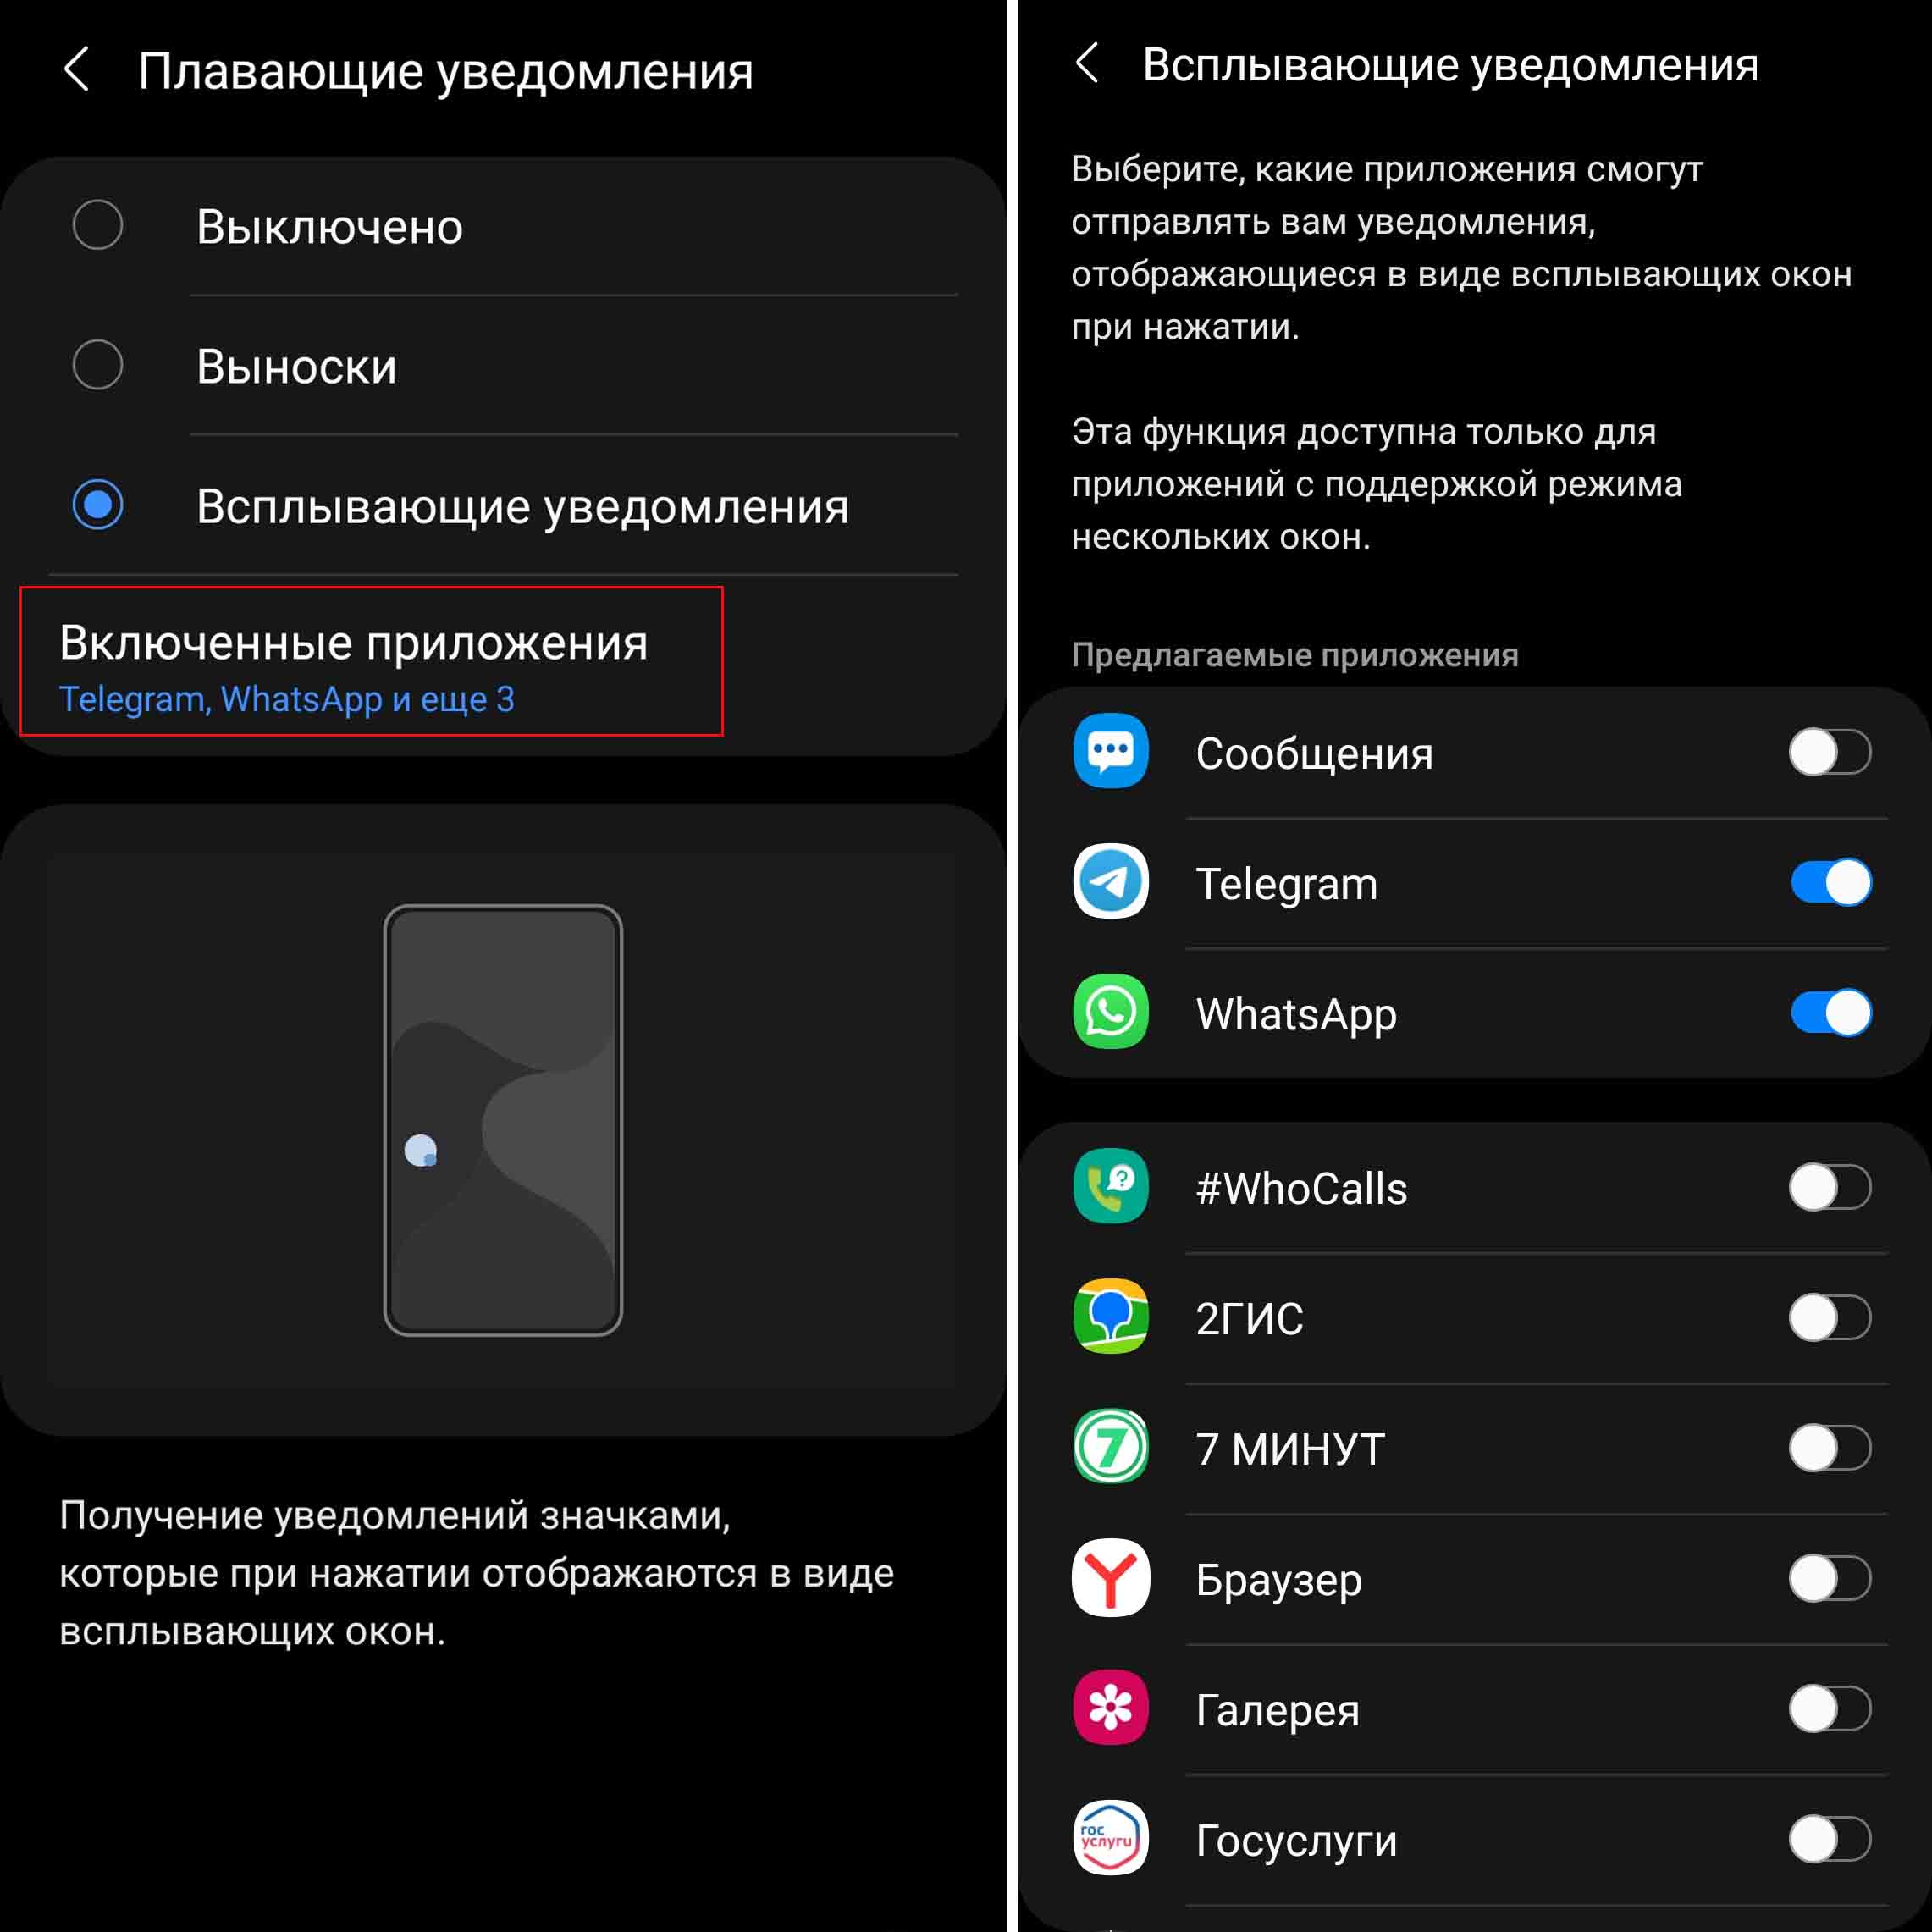 Как настроить оповещения о сообщениях в группе ВКонтакте на смартфоне